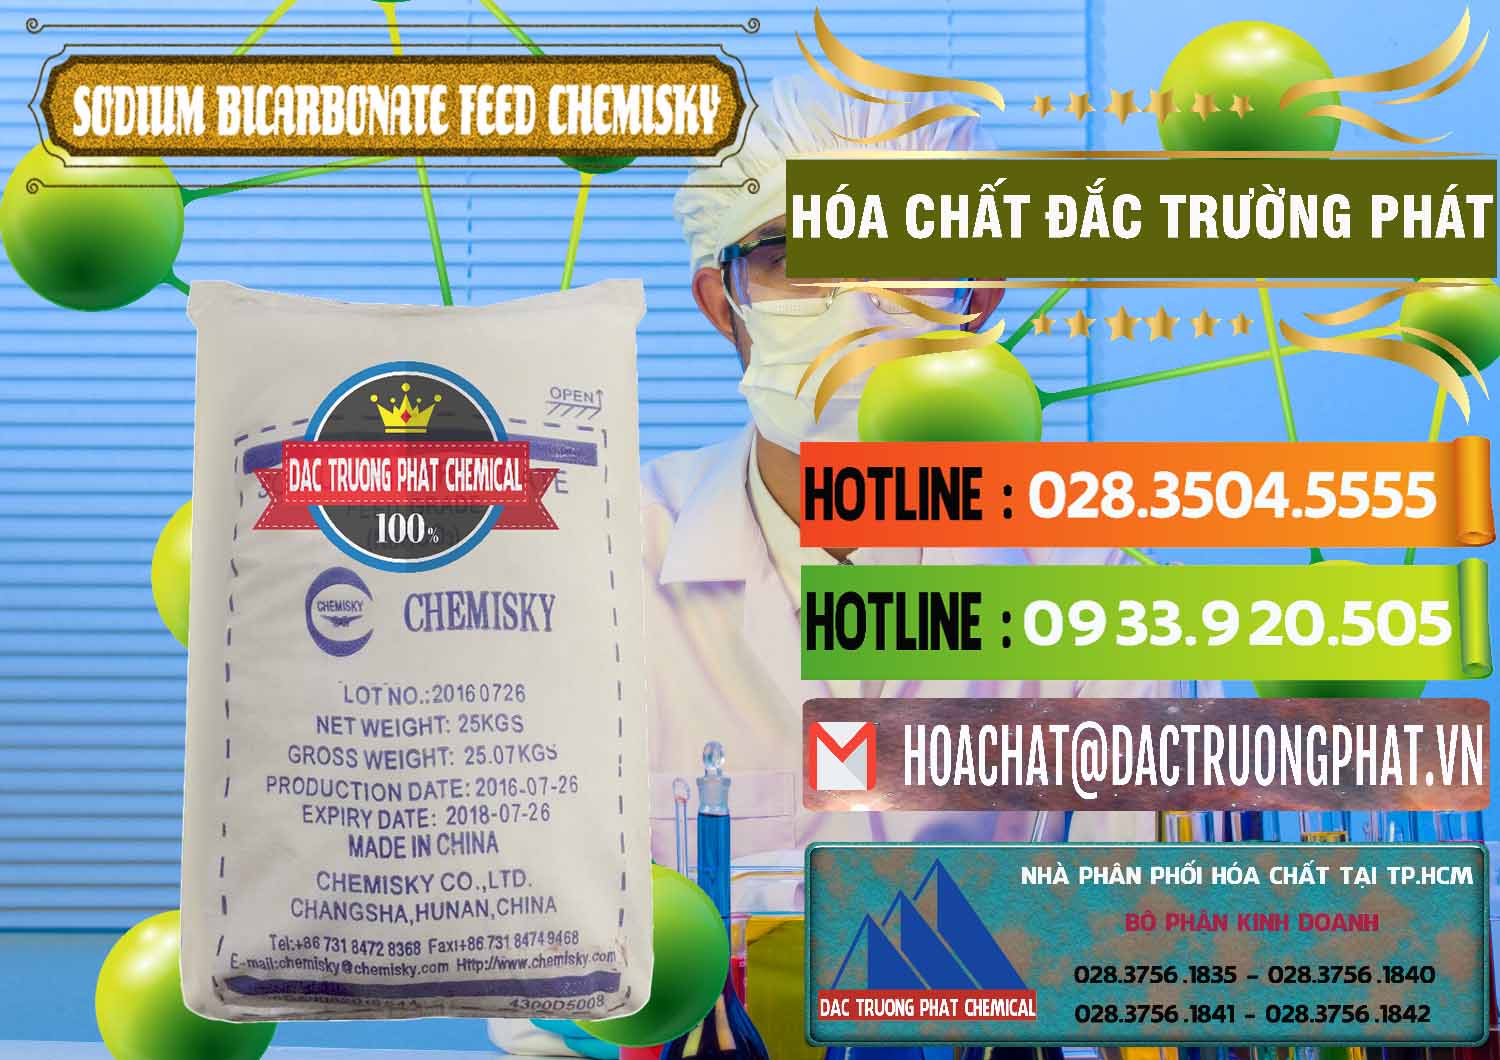 Nơi bán ( cung cấp ) Sodium Bicarbonate – Bicar NaHCO3 Feed Grade Chemisky Trung Quốc China - 0264 - Cty chuyên kinh doanh & cung cấp hóa chất tại TP.HCM - cungcaphoachat.com.vn